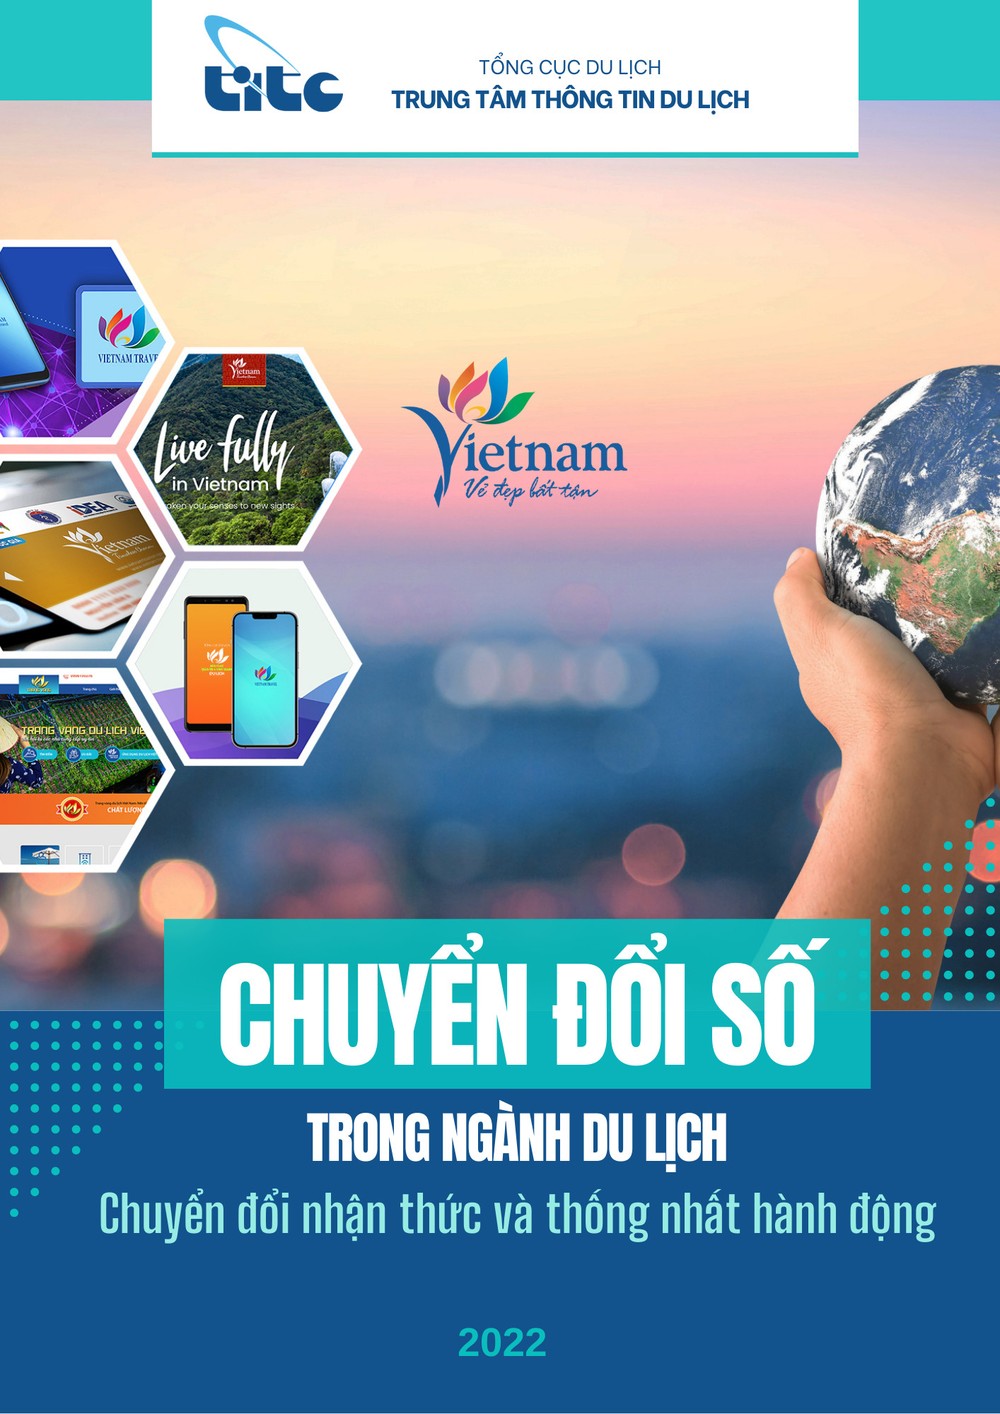 越南首次公布旅游业数字化转型相关文件